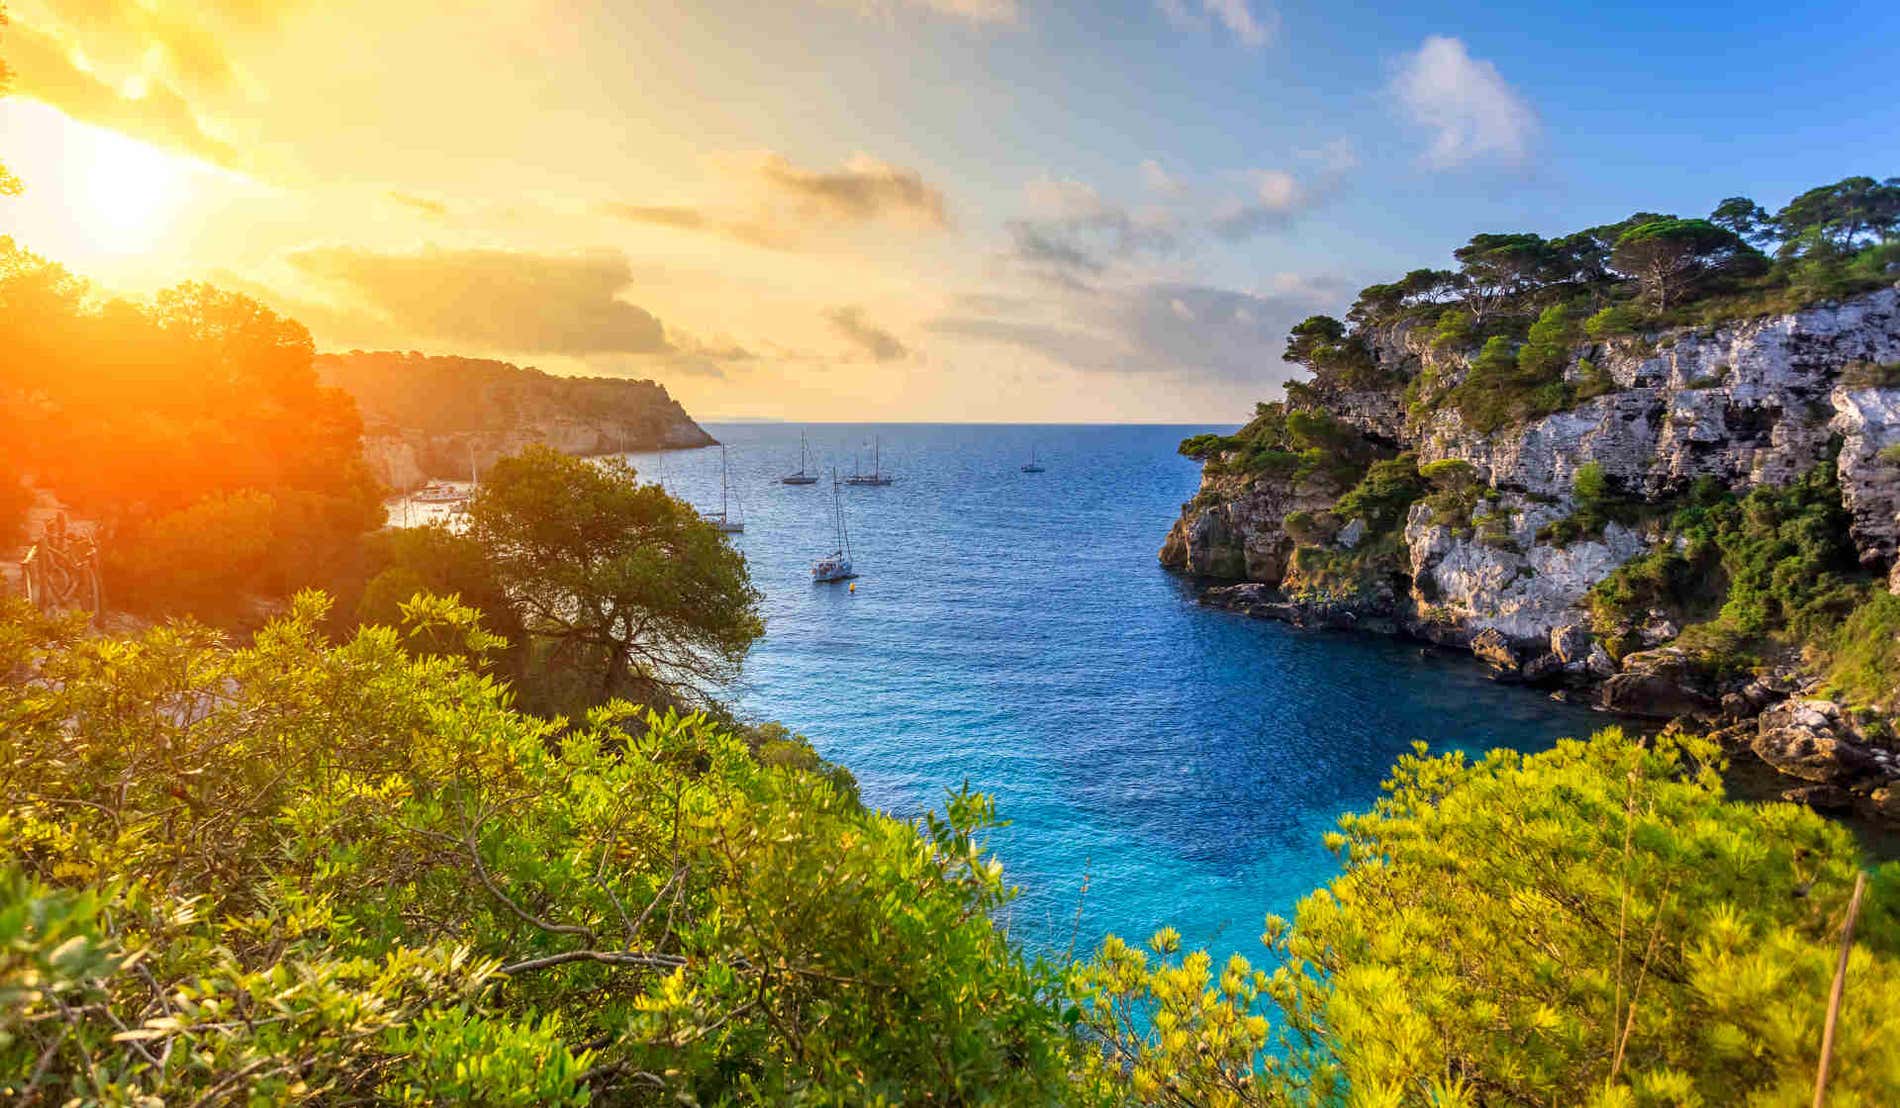 O que ver em Menorca: 15 lugares para descobrir a ilha